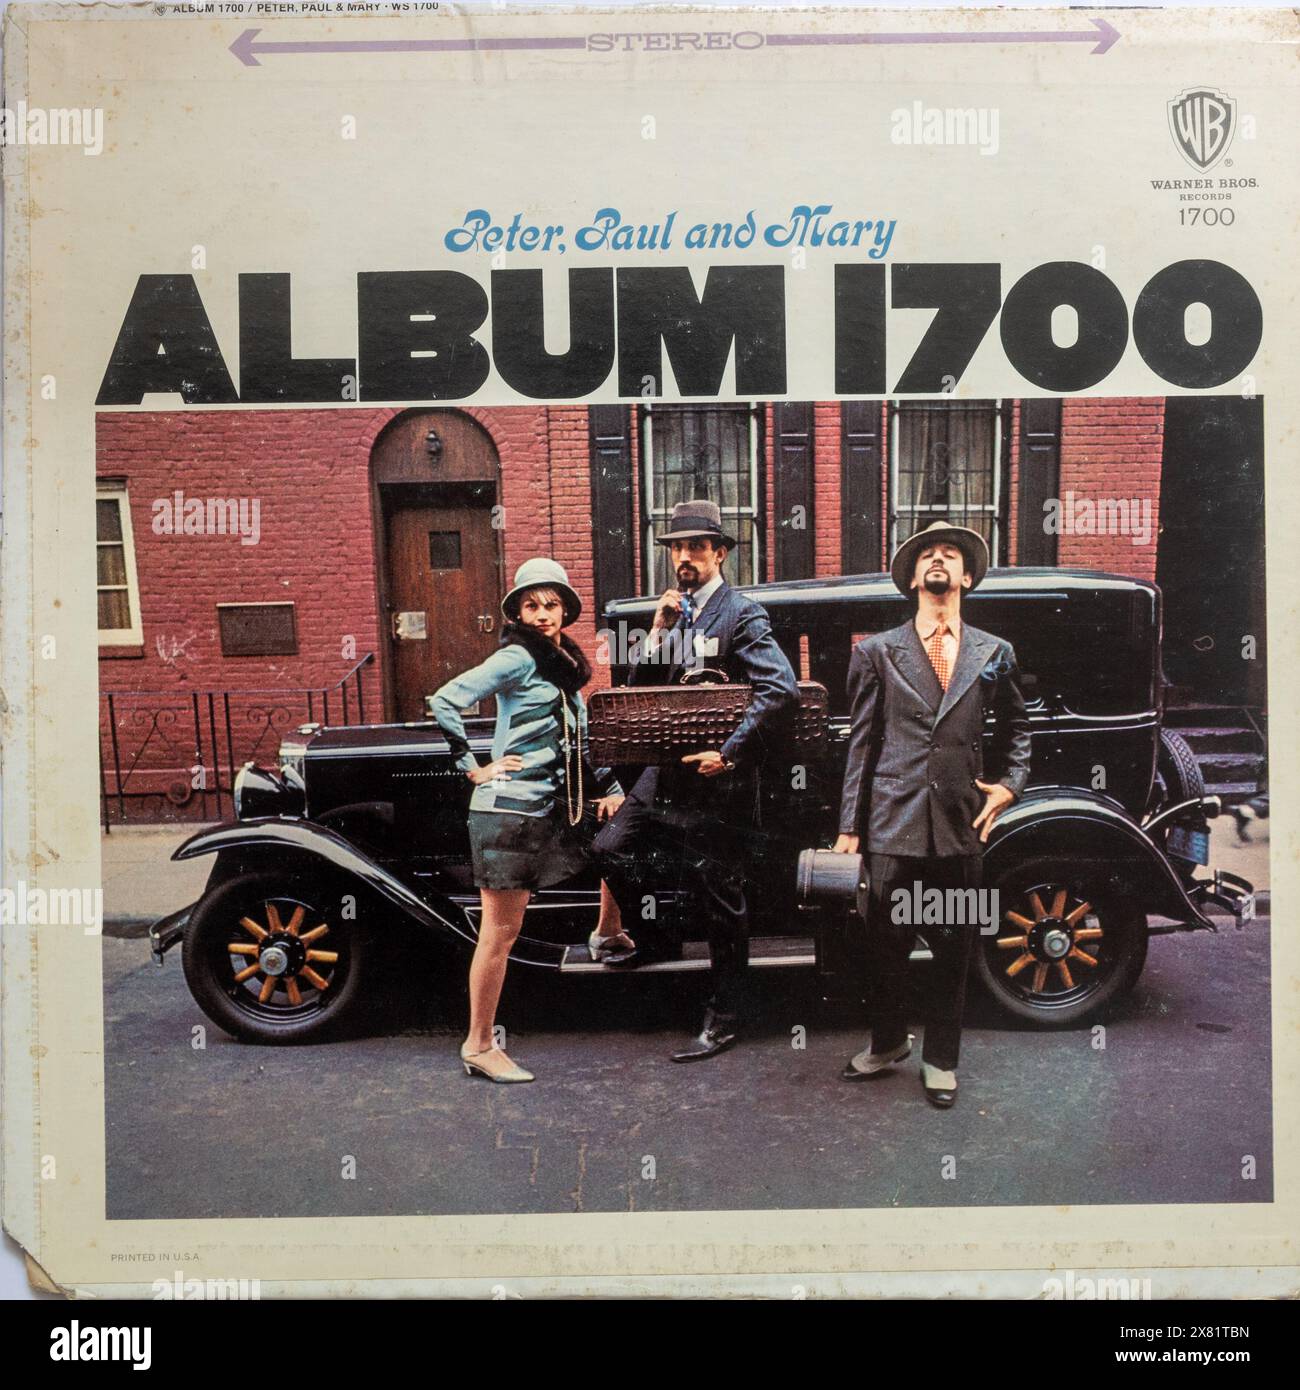 Album 1700 Album Cover des amerikanischen Folk-Trio Peter, Paul and Mary, veröffentlicht 1967, Vinyl-Platte Stockfoto